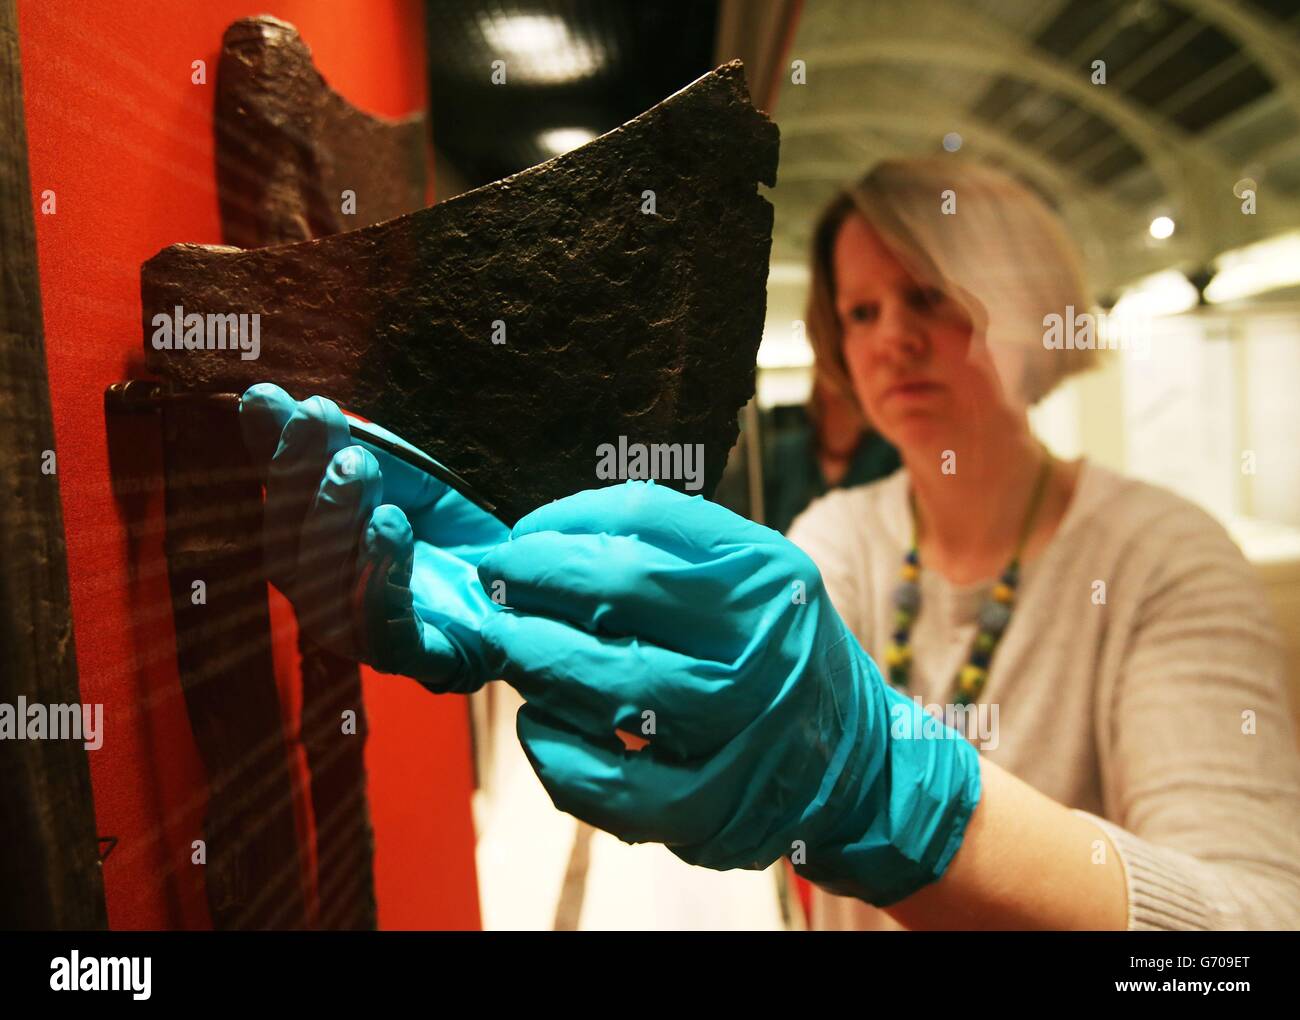 Le conservateur Carol Smith apporte des ajustements aux haches viking qui ont été trouvées à Lough Corrib en 2013, lors du lancement de deux expositions, au Musée national d'Irlande, Dublin, pour marquer le 1000e anniversaire de la bataille de Clontarf. Banque D'Images